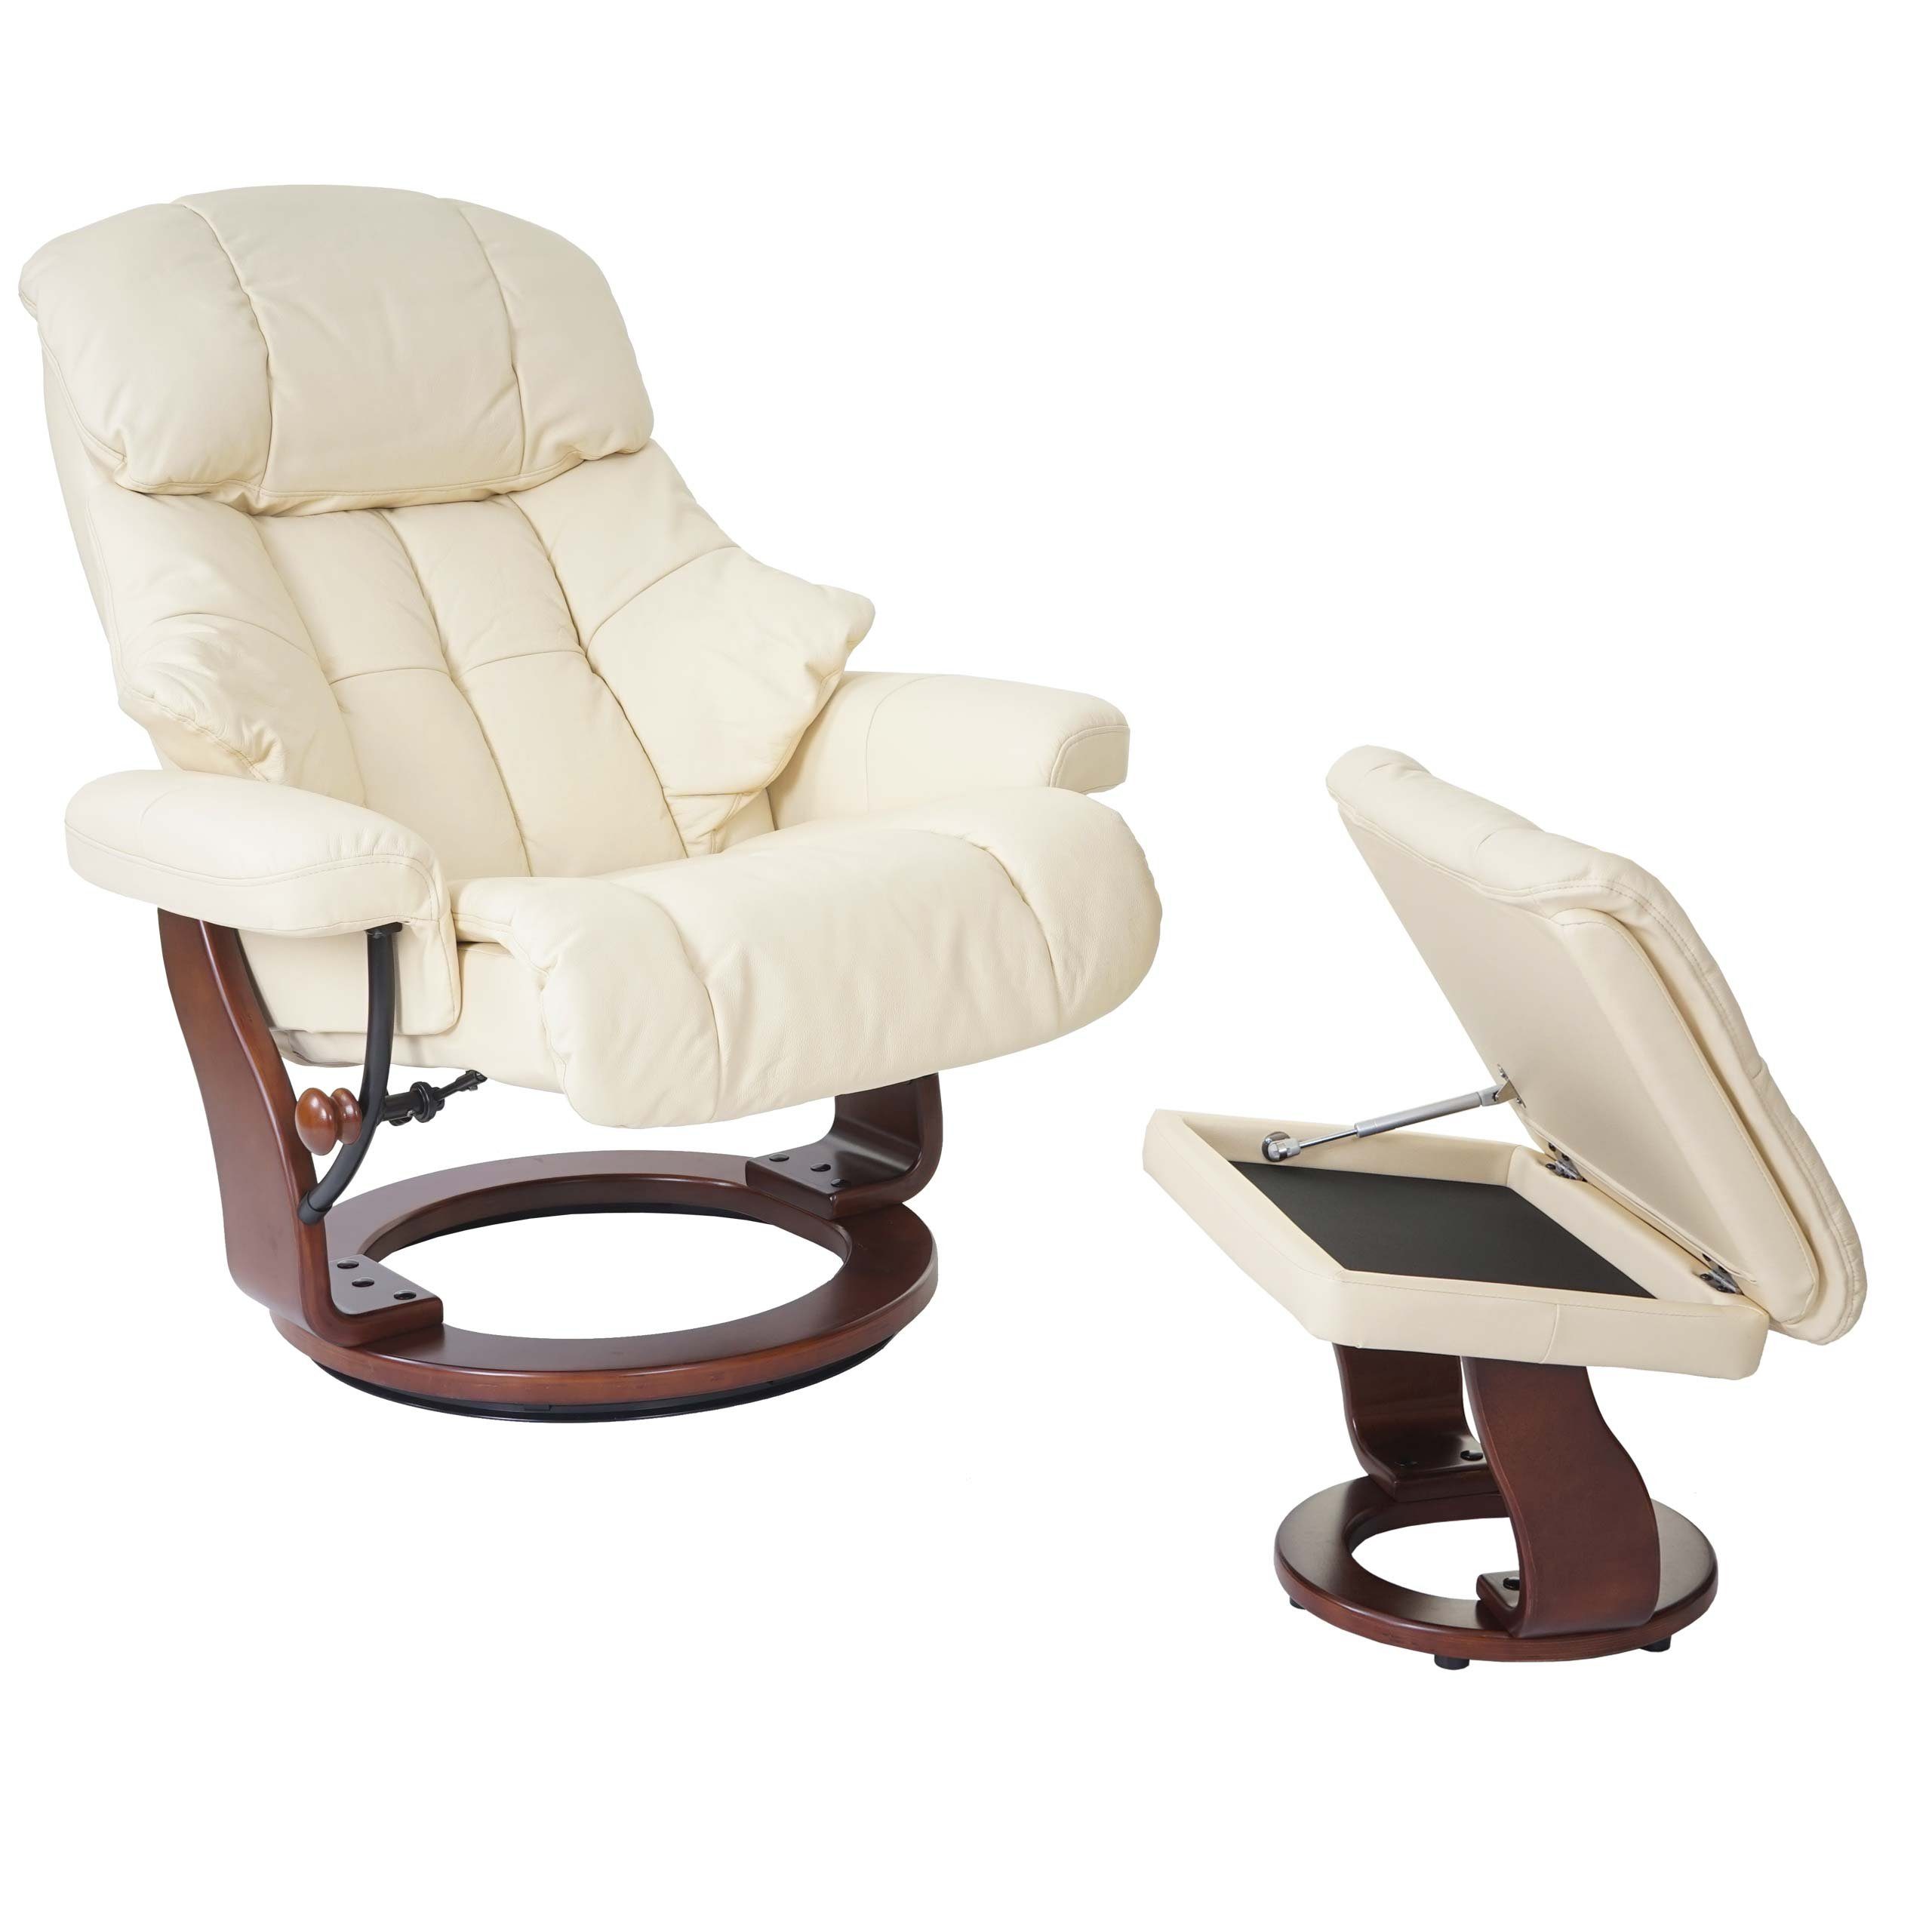 MCA furniture Relaxsessel Windsor XXL, Extradicke Polsterung, inklusive gepolstertem Fußhocker mit Staufach creme, Walnuss-Optik